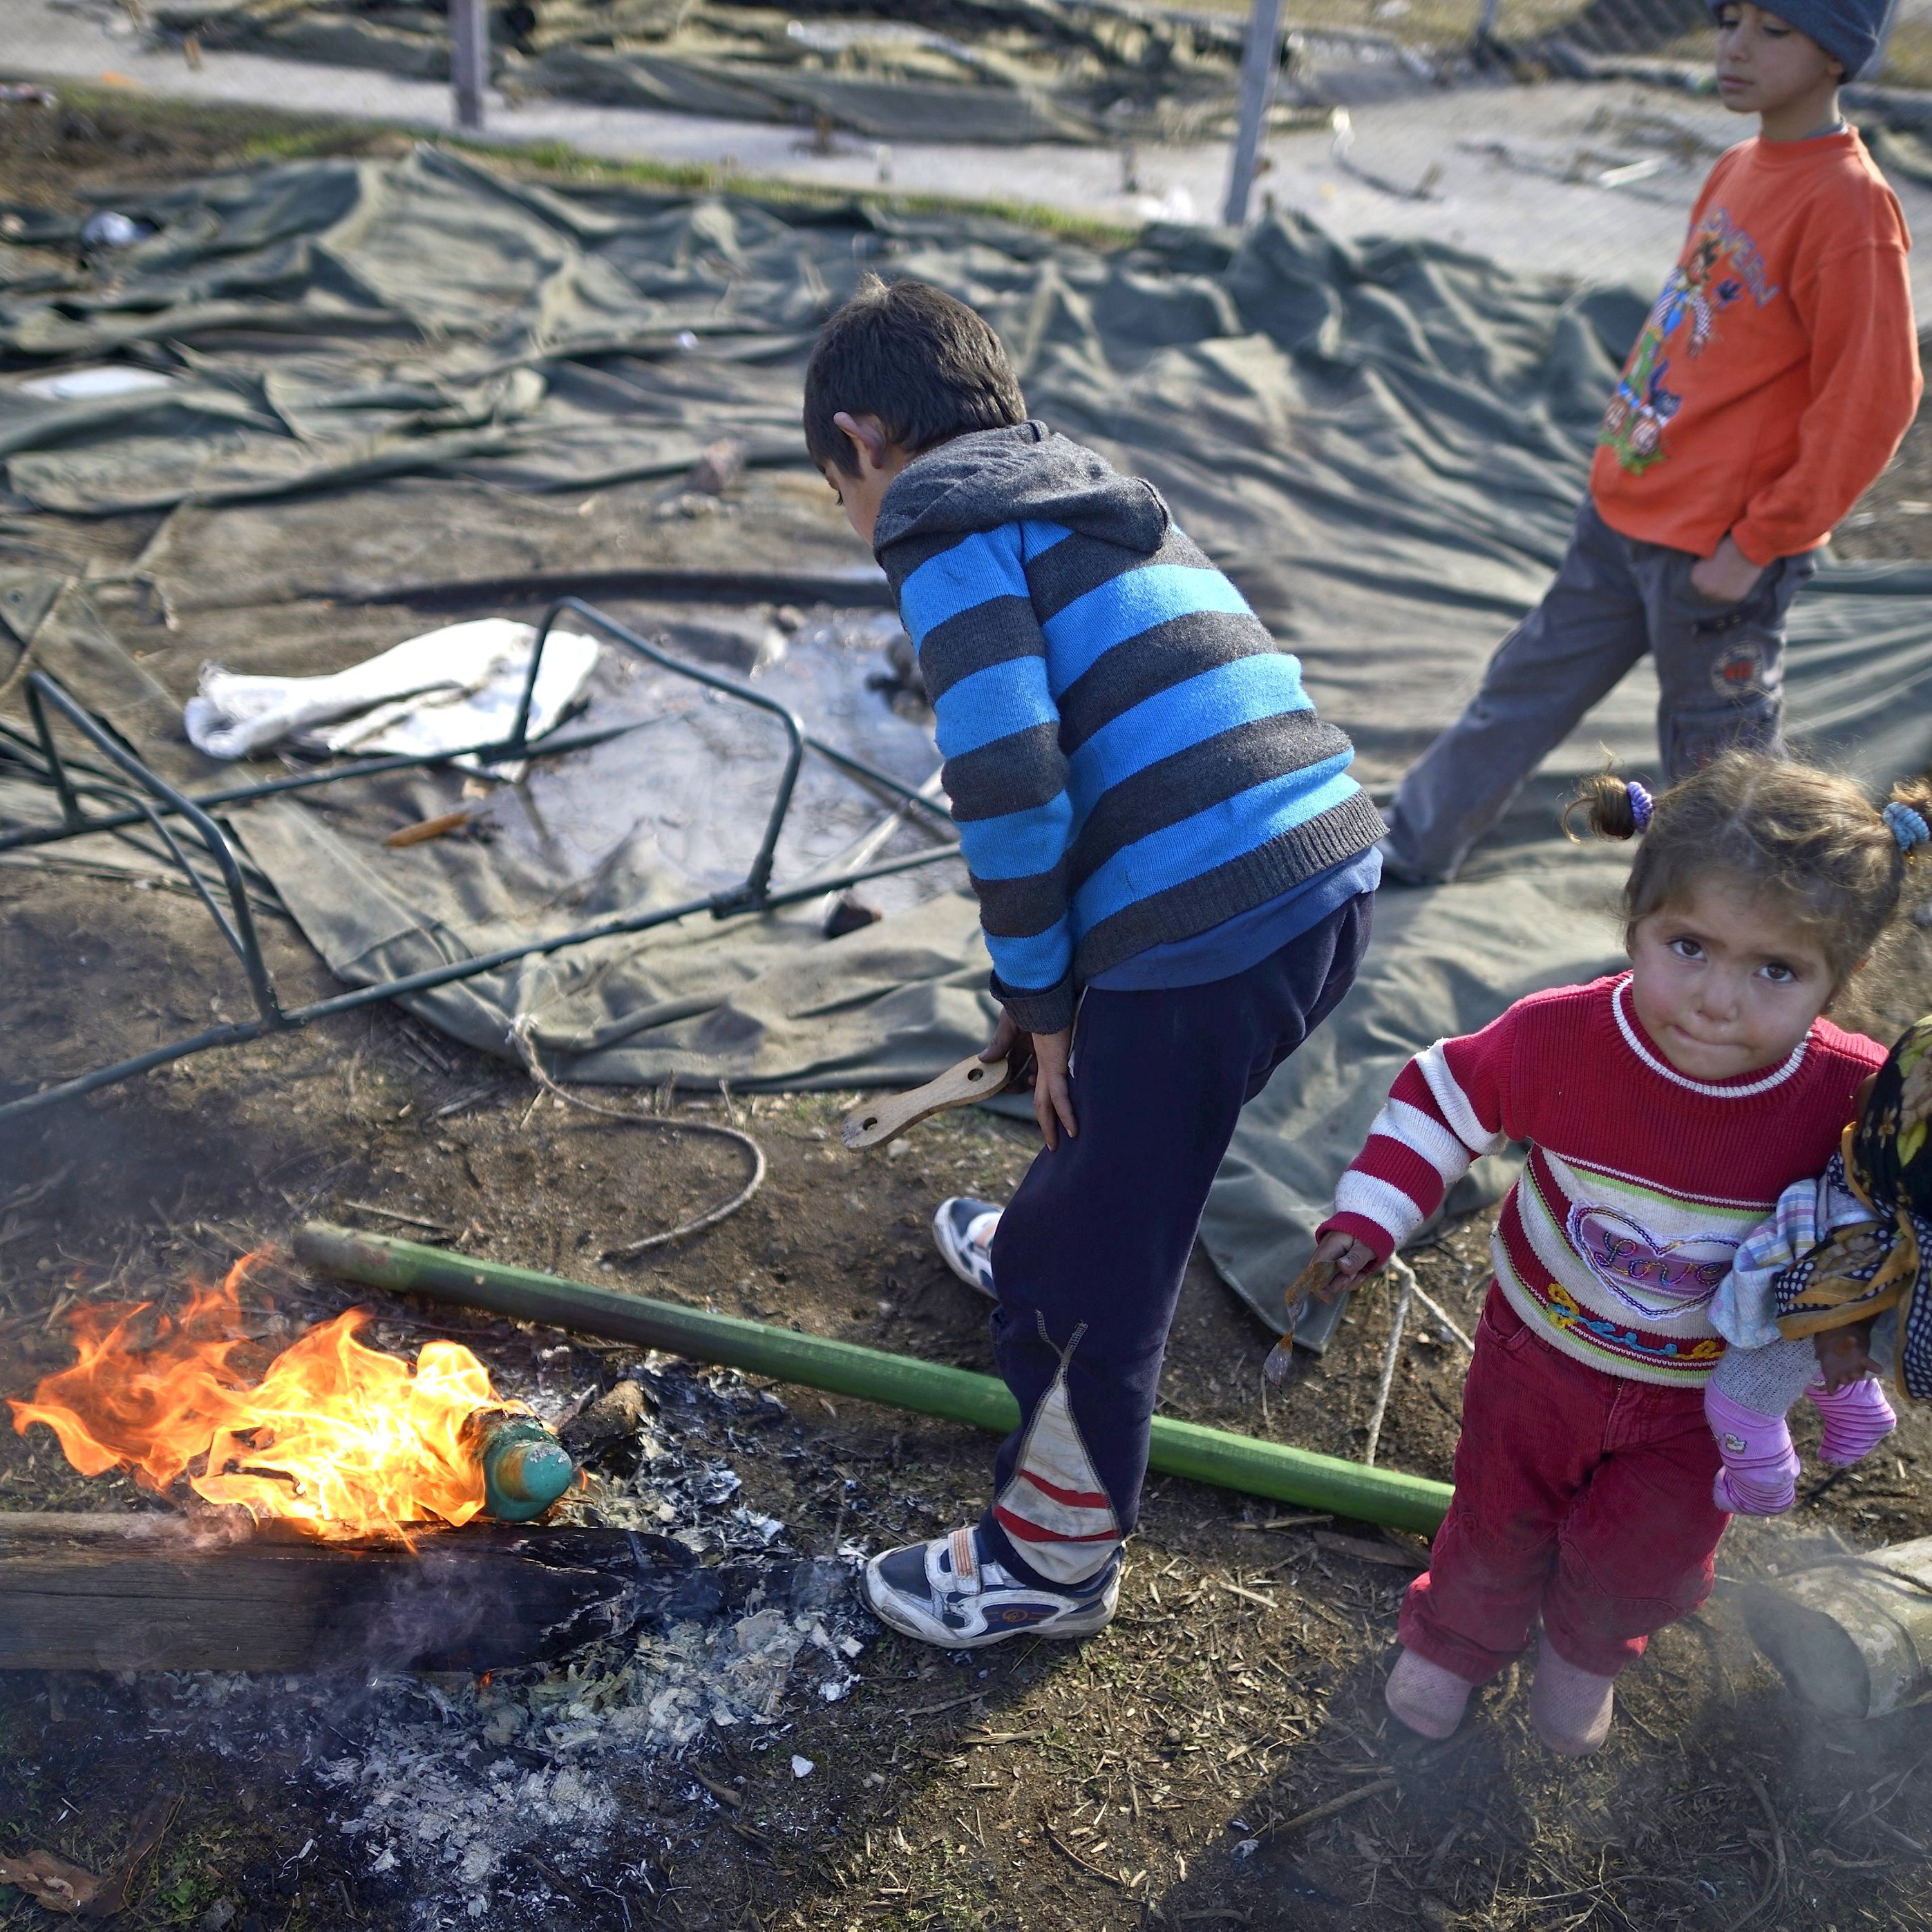 Бежанци от Сирия в България